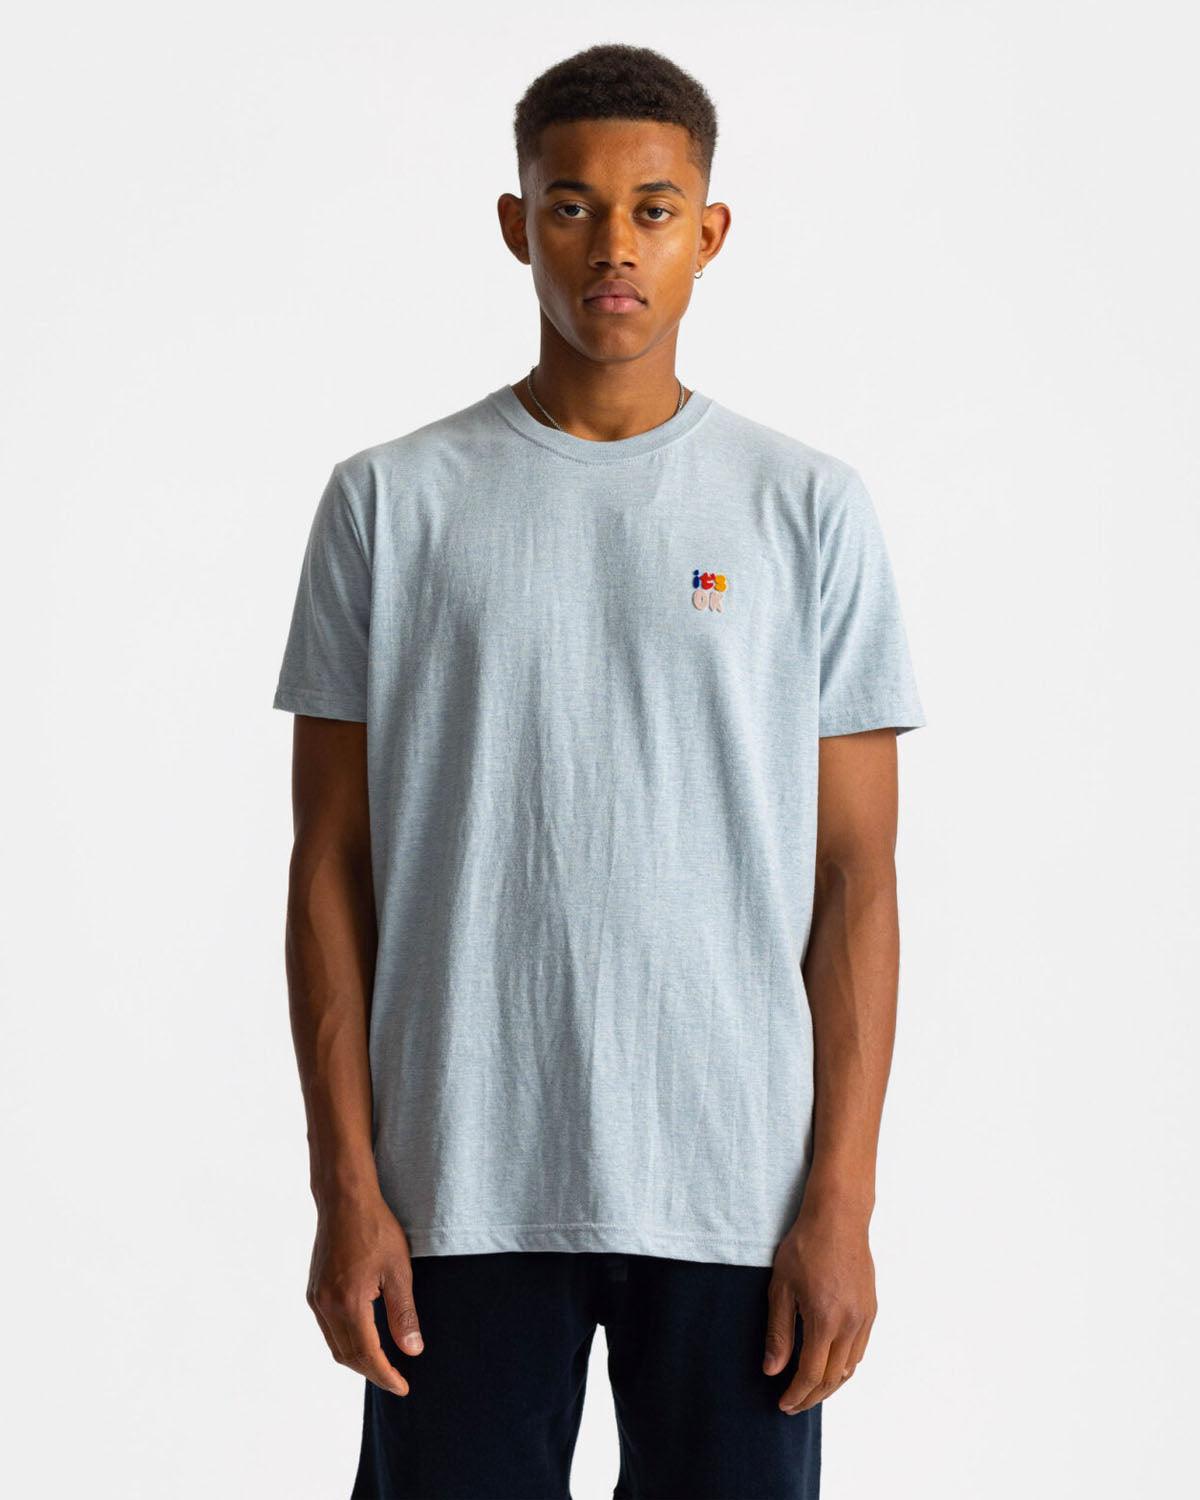 1316 T-shirt - Lightblue Melange - Revolution - Kul og Koks